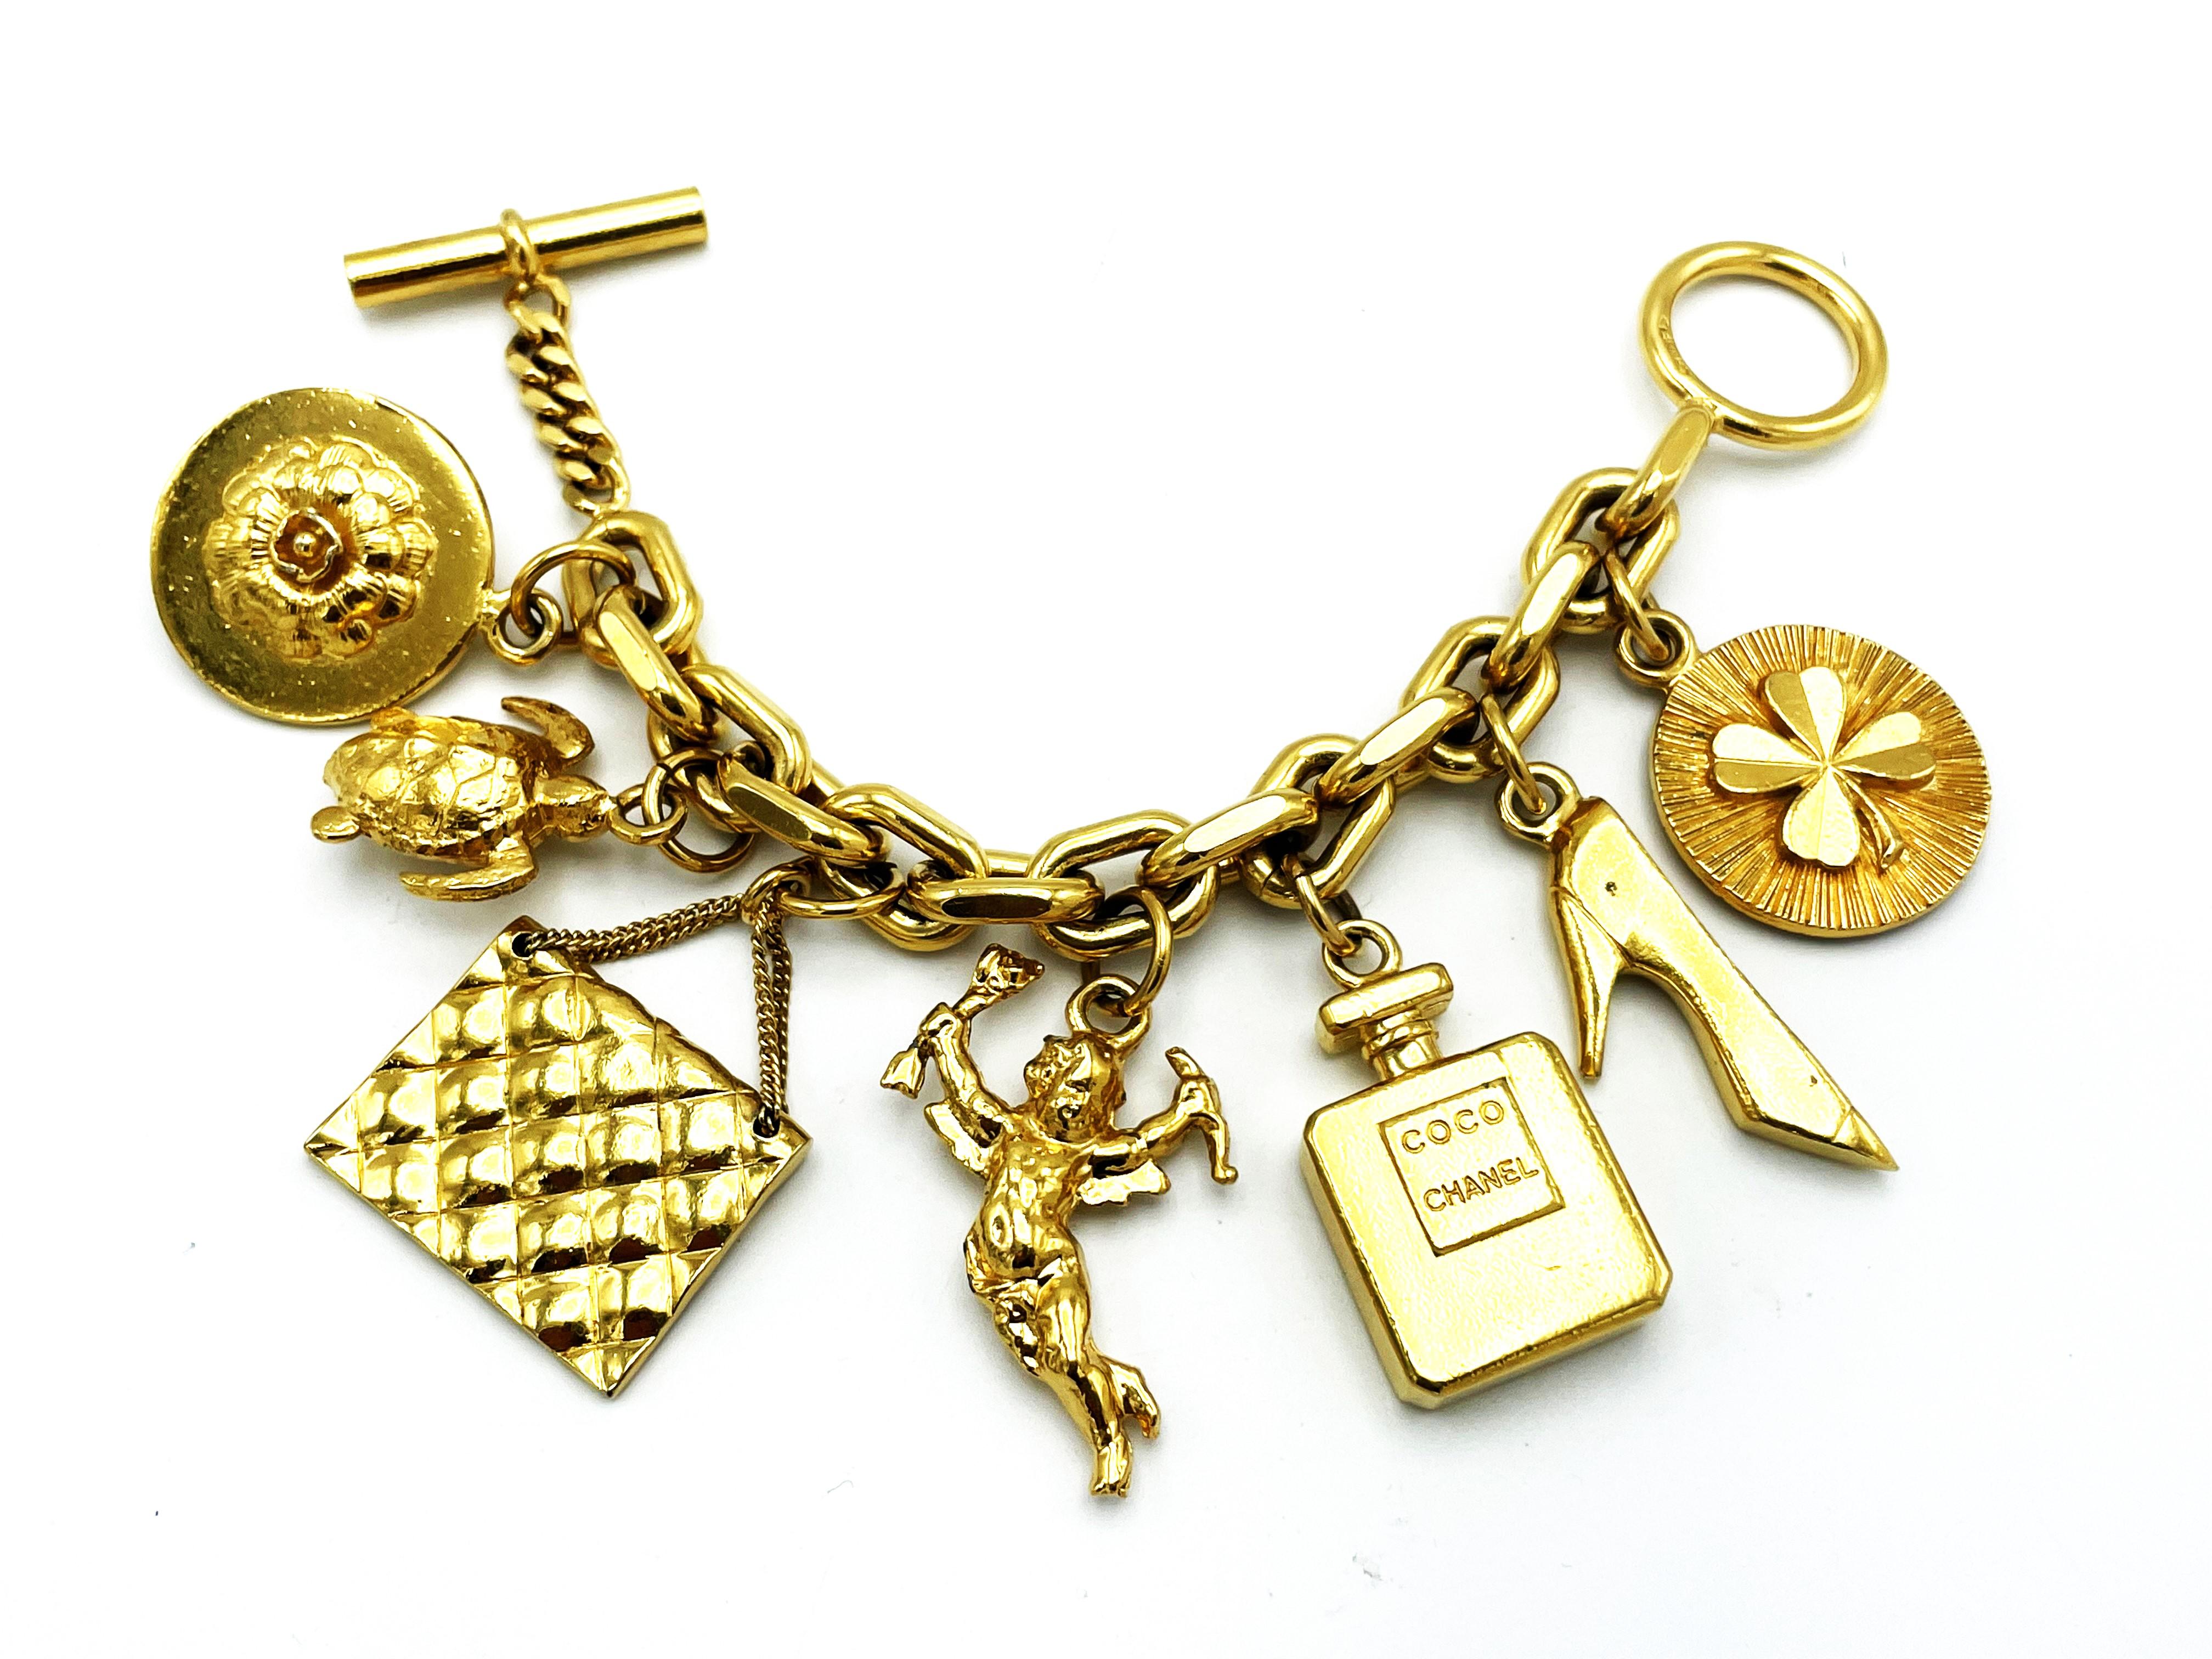 Chanels goldfarbenes Gliederarmband mit sieben ikonischen Chanel-Objekten, die an der Kette hängen: ein Kleeblatt, Absätze, eine Parfümflasche, Amor, eine gesteppte Chanel-Tasche und eine Schildkröte, eine Kamelie, die Lieblingsblume von Coco